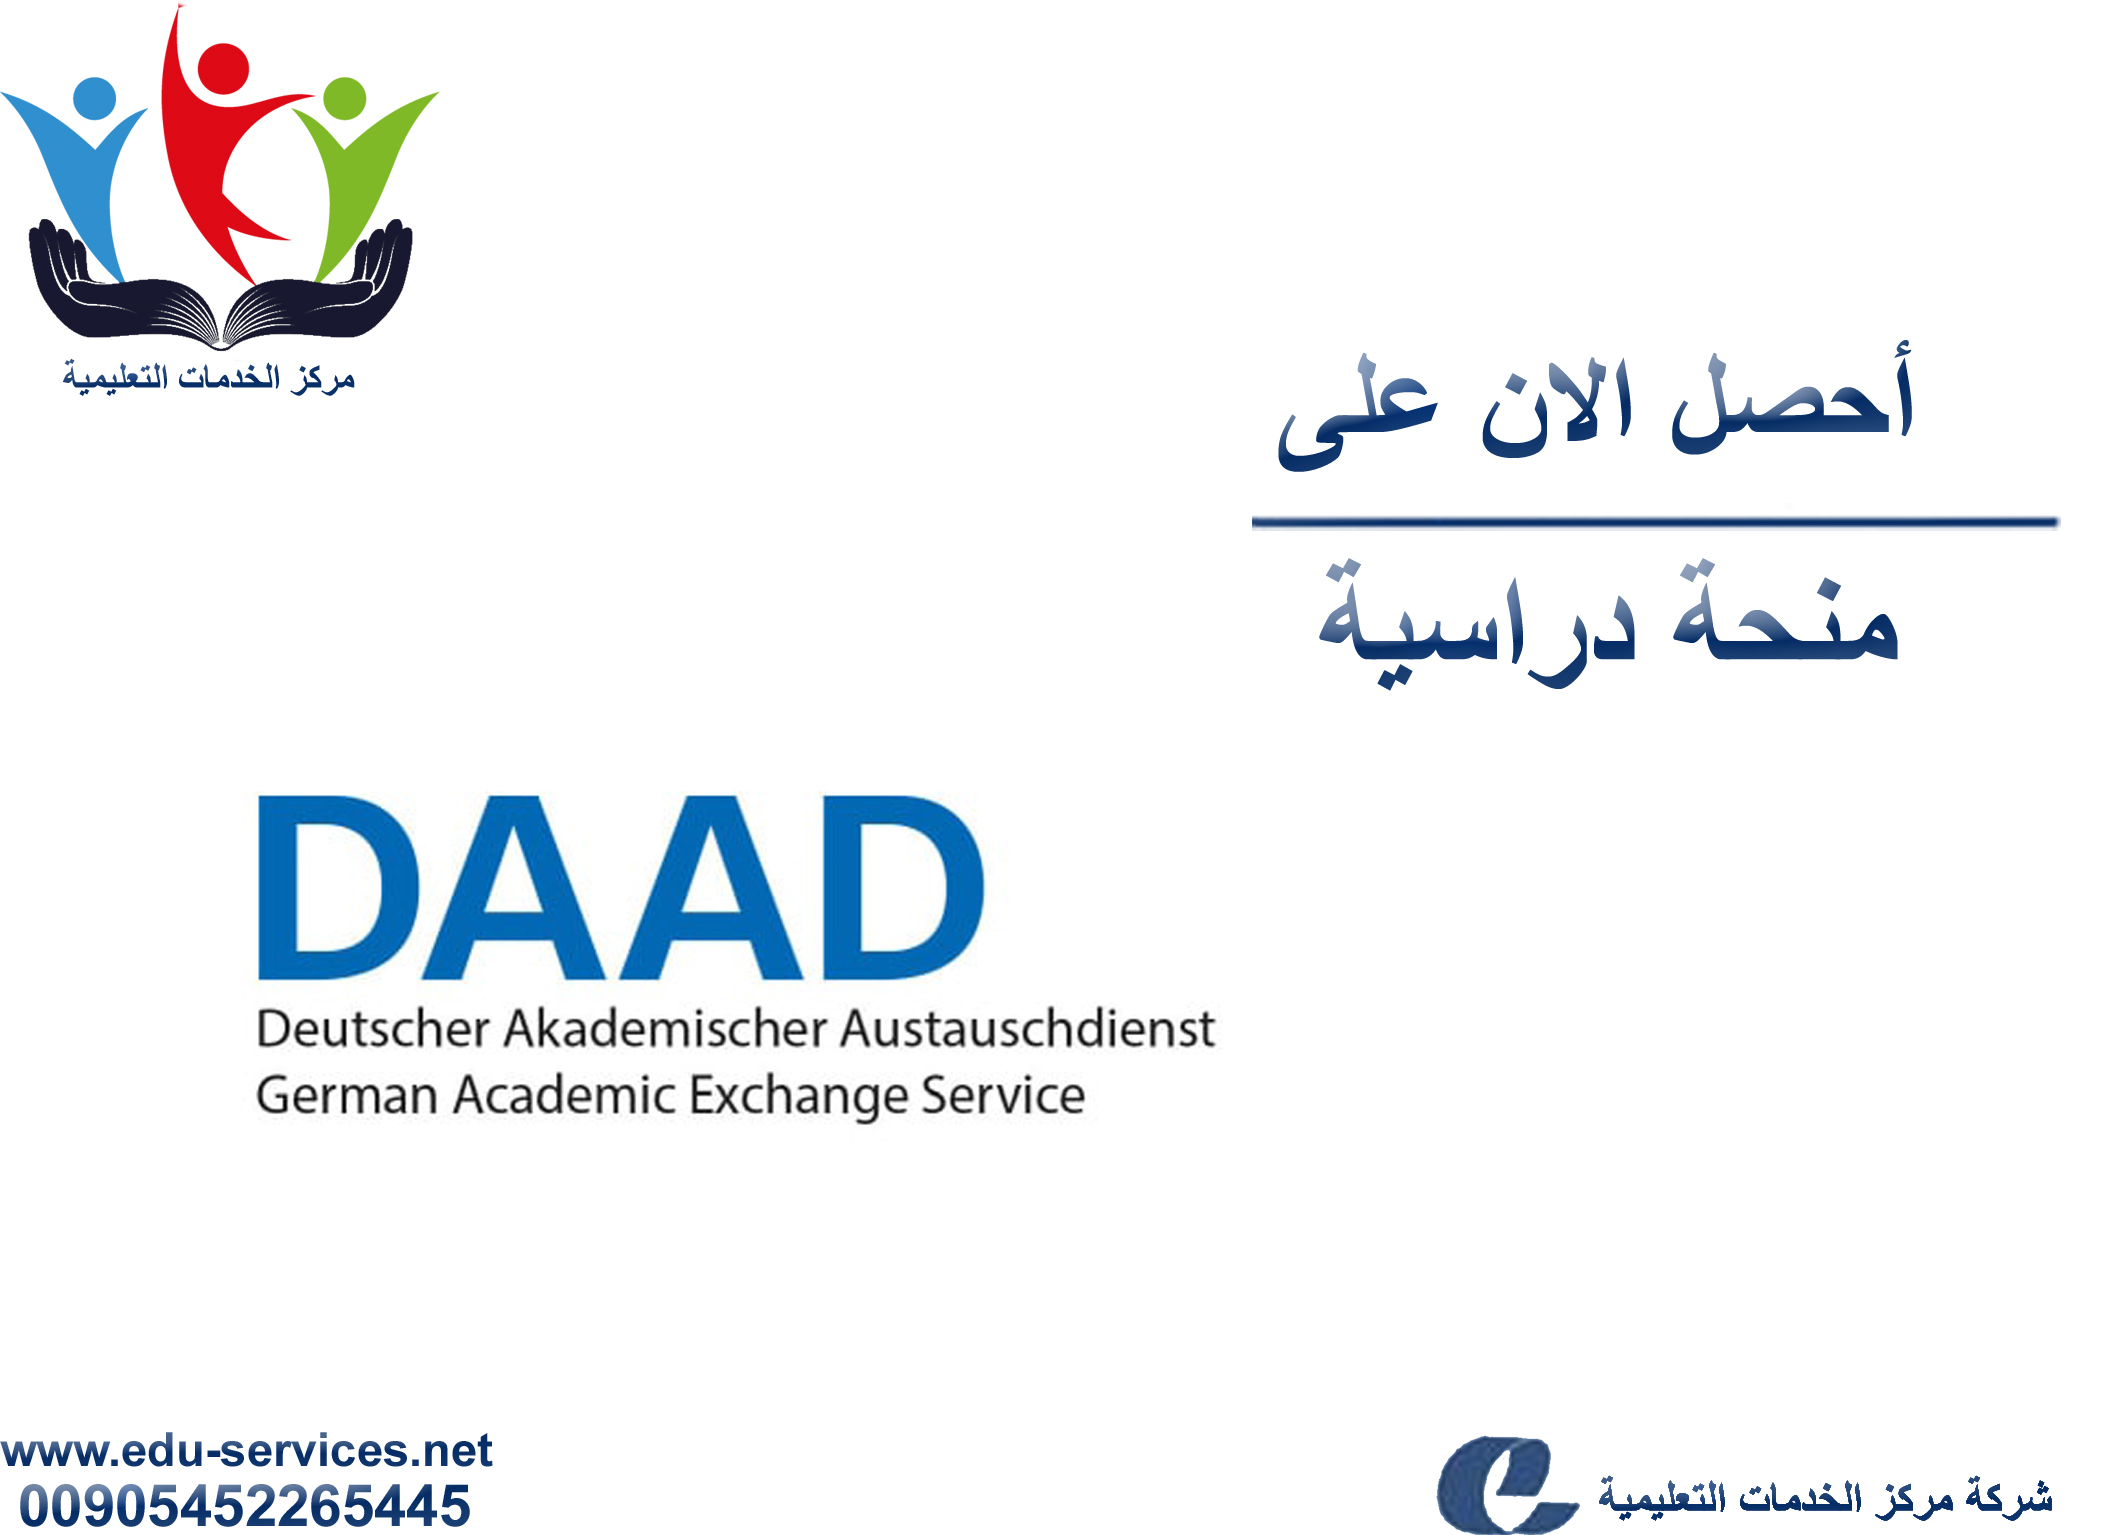 منح دراسية لدرجة الدكتوراه من DAAD في ألمانيا للعام 2018-2019